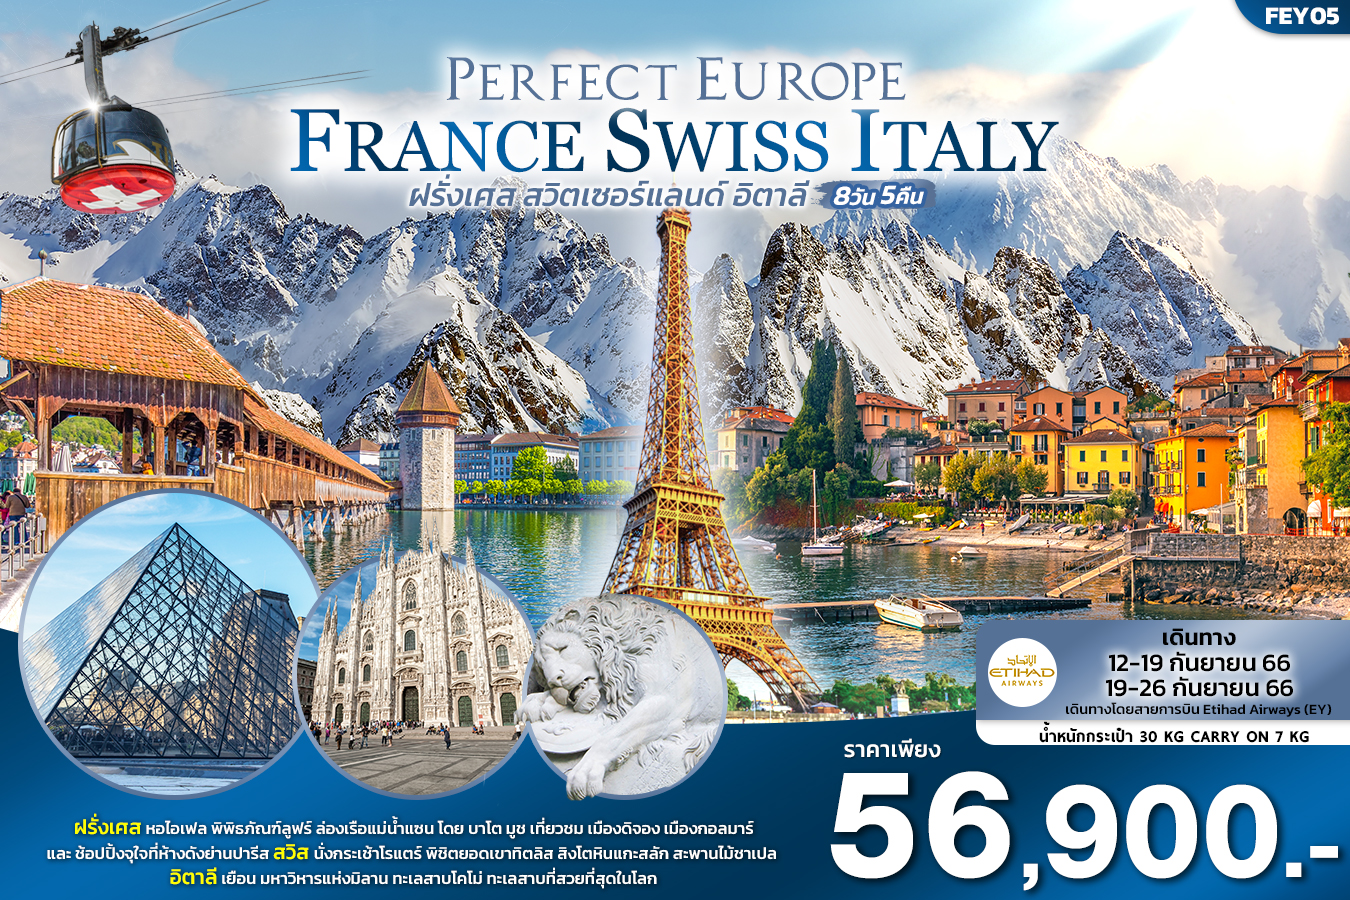 PERFECT EUROPE เที่ยว... ฝรั่งเศส สวิตเซอร์แลนด์ อิตาลี 8วัน 5คืน